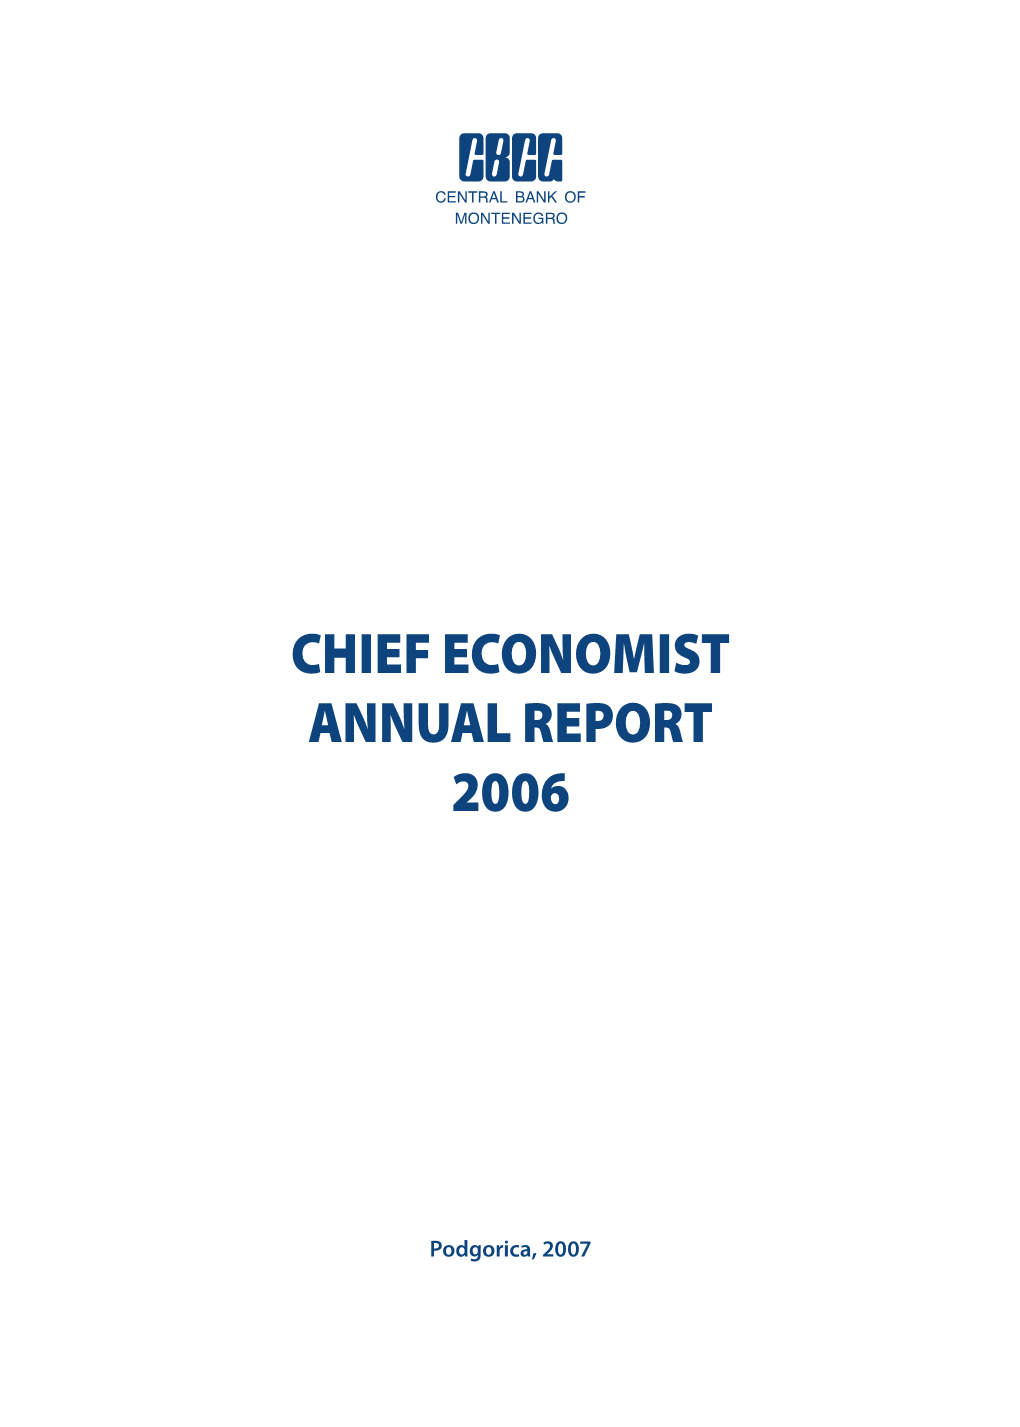 Chief Economist Annual Report 2006